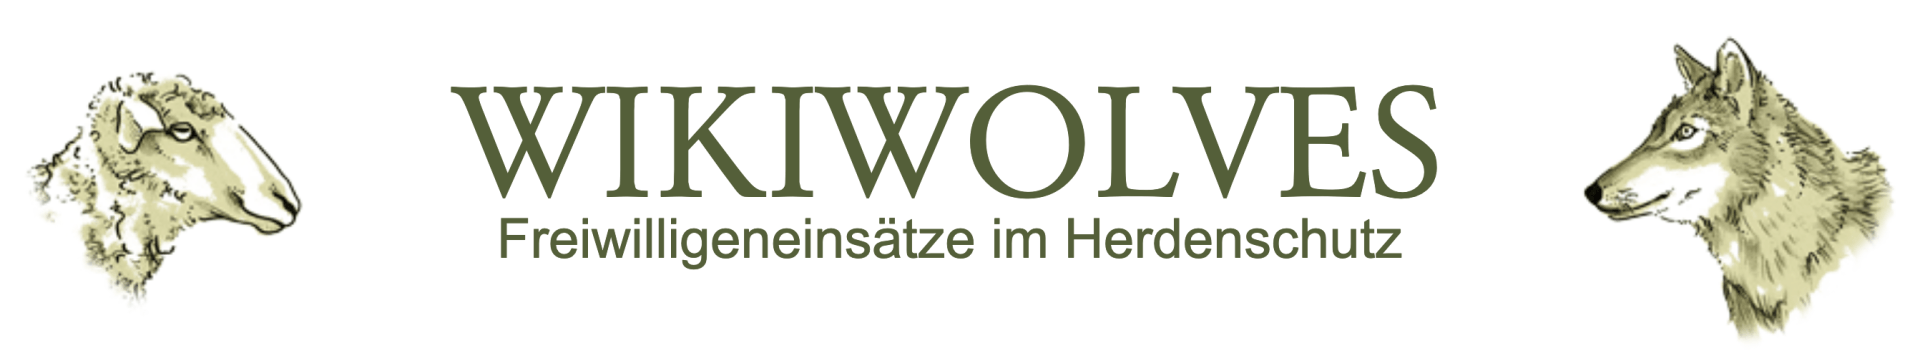 Bild Logo WikiWolves